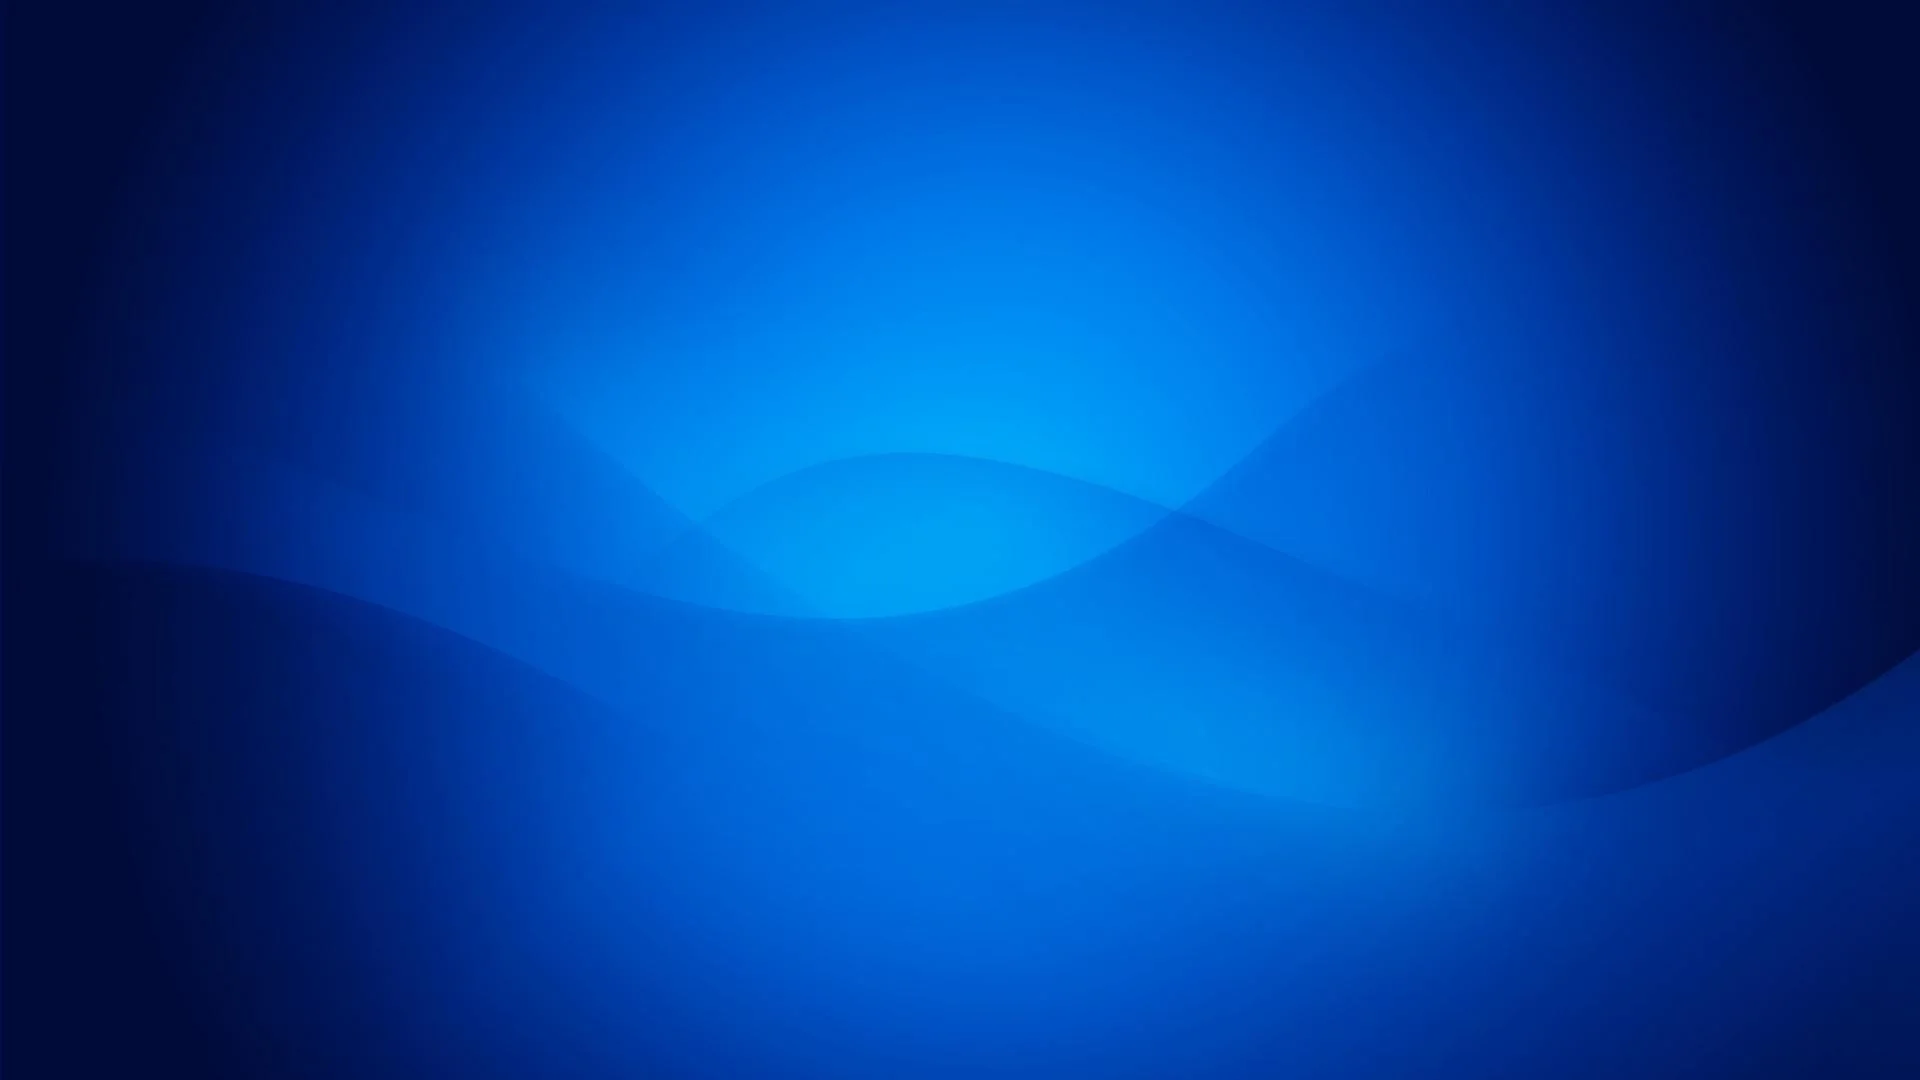 Blue-Wallpaper-For-Background-15.jpg